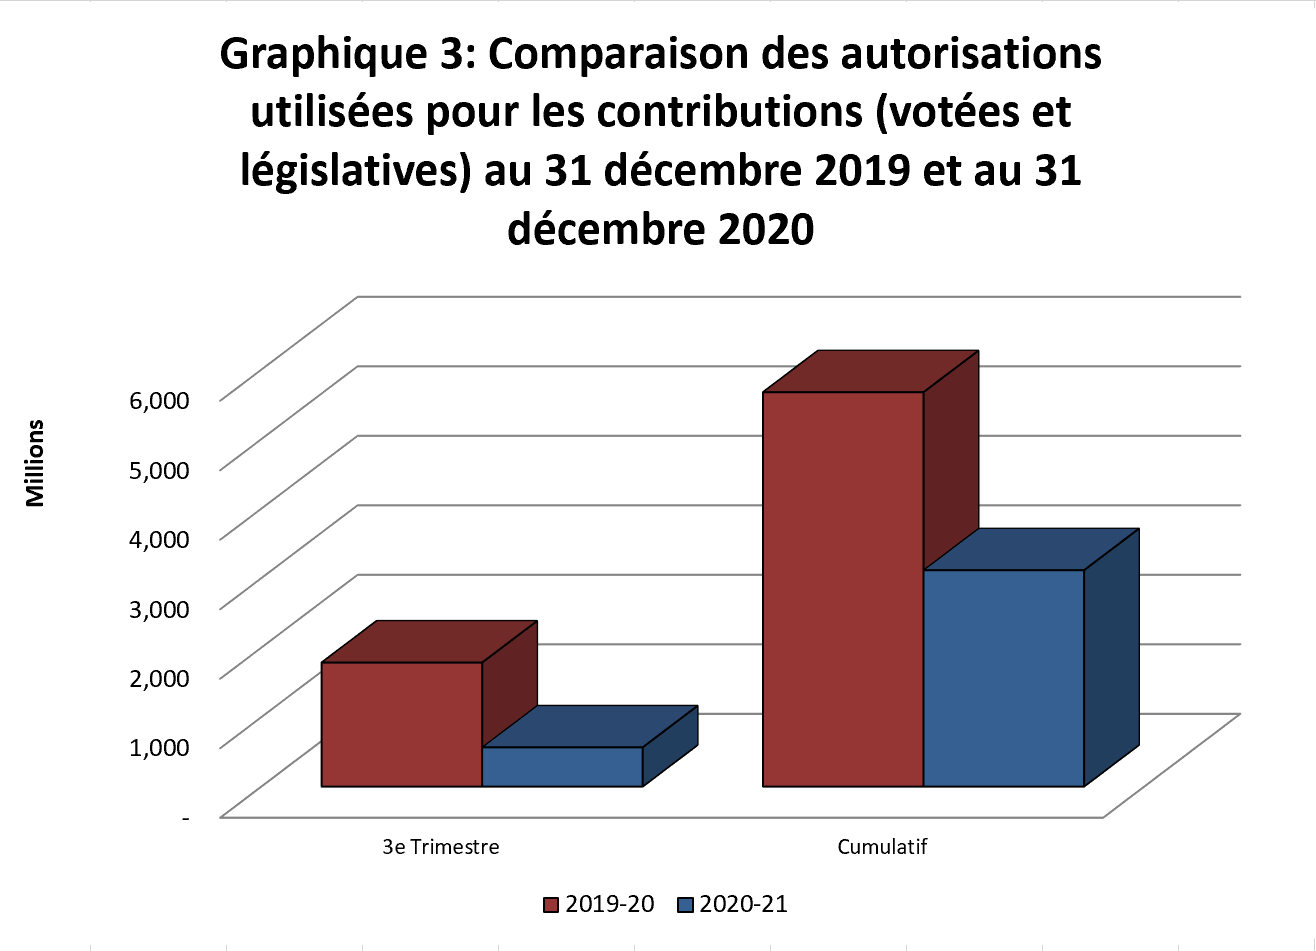 Graphique 3: Comparaison des autorisations utilisées pour les contributions (votées et législatives) au 31 décembre 2019 et au 31 décembre 2020